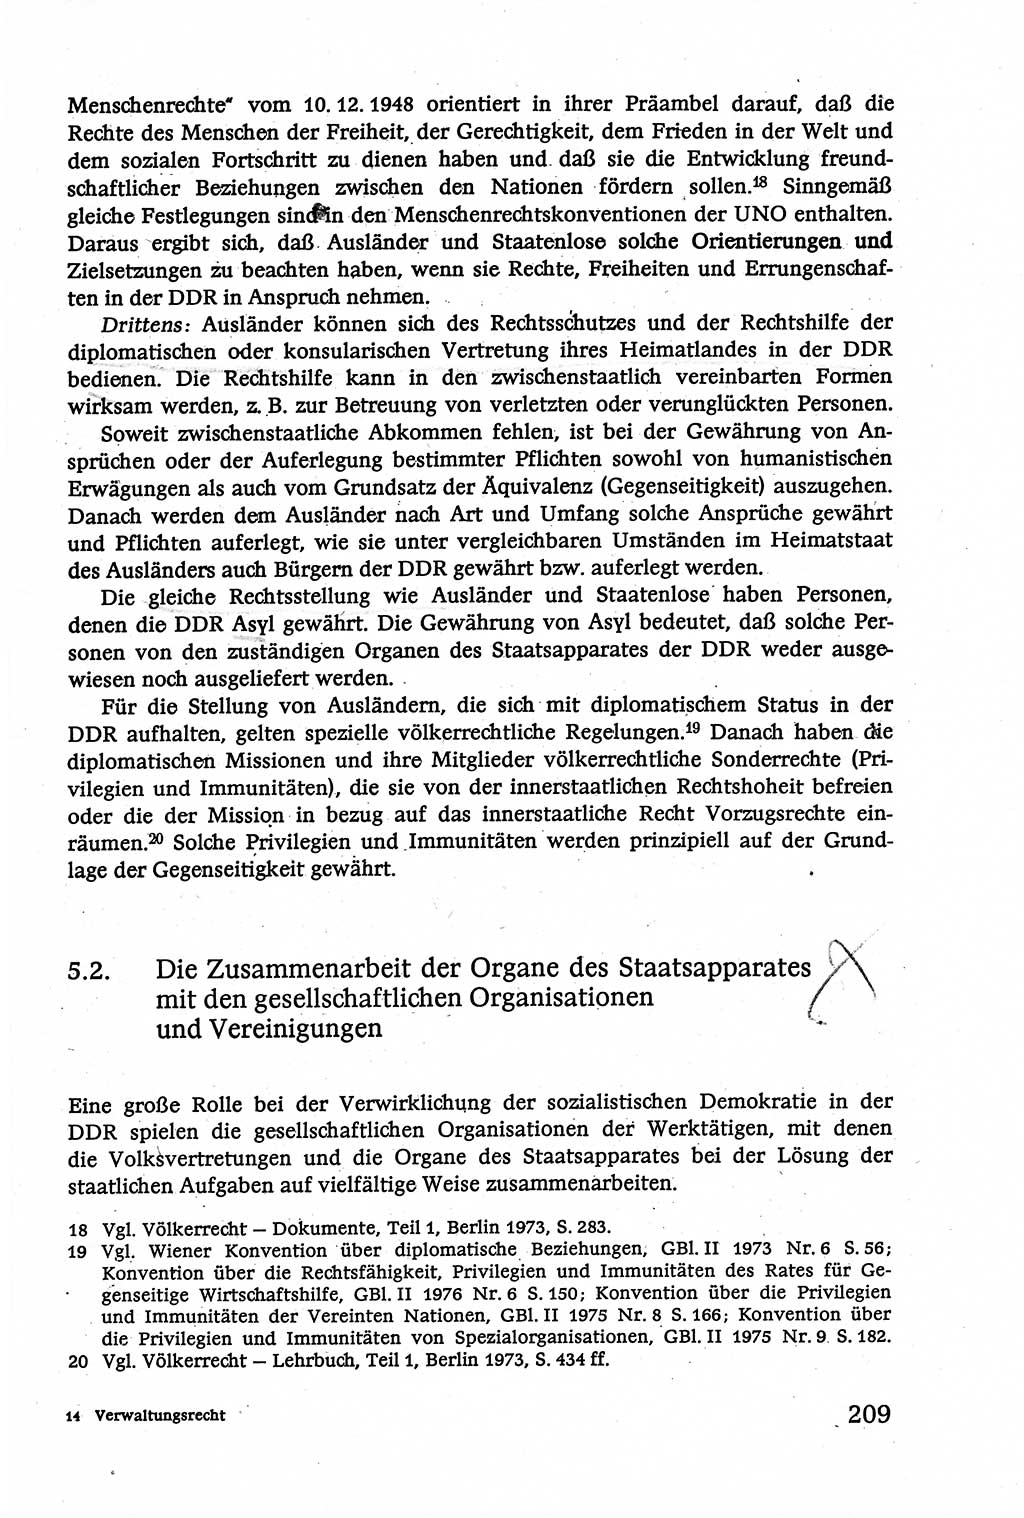 Verwaltungsrecht [Deutsche Demokratische Republik (DDR)], Lehrbuch 1979, Seite 209 (Verw.-R. DDR Lb. 1979, S. 209)